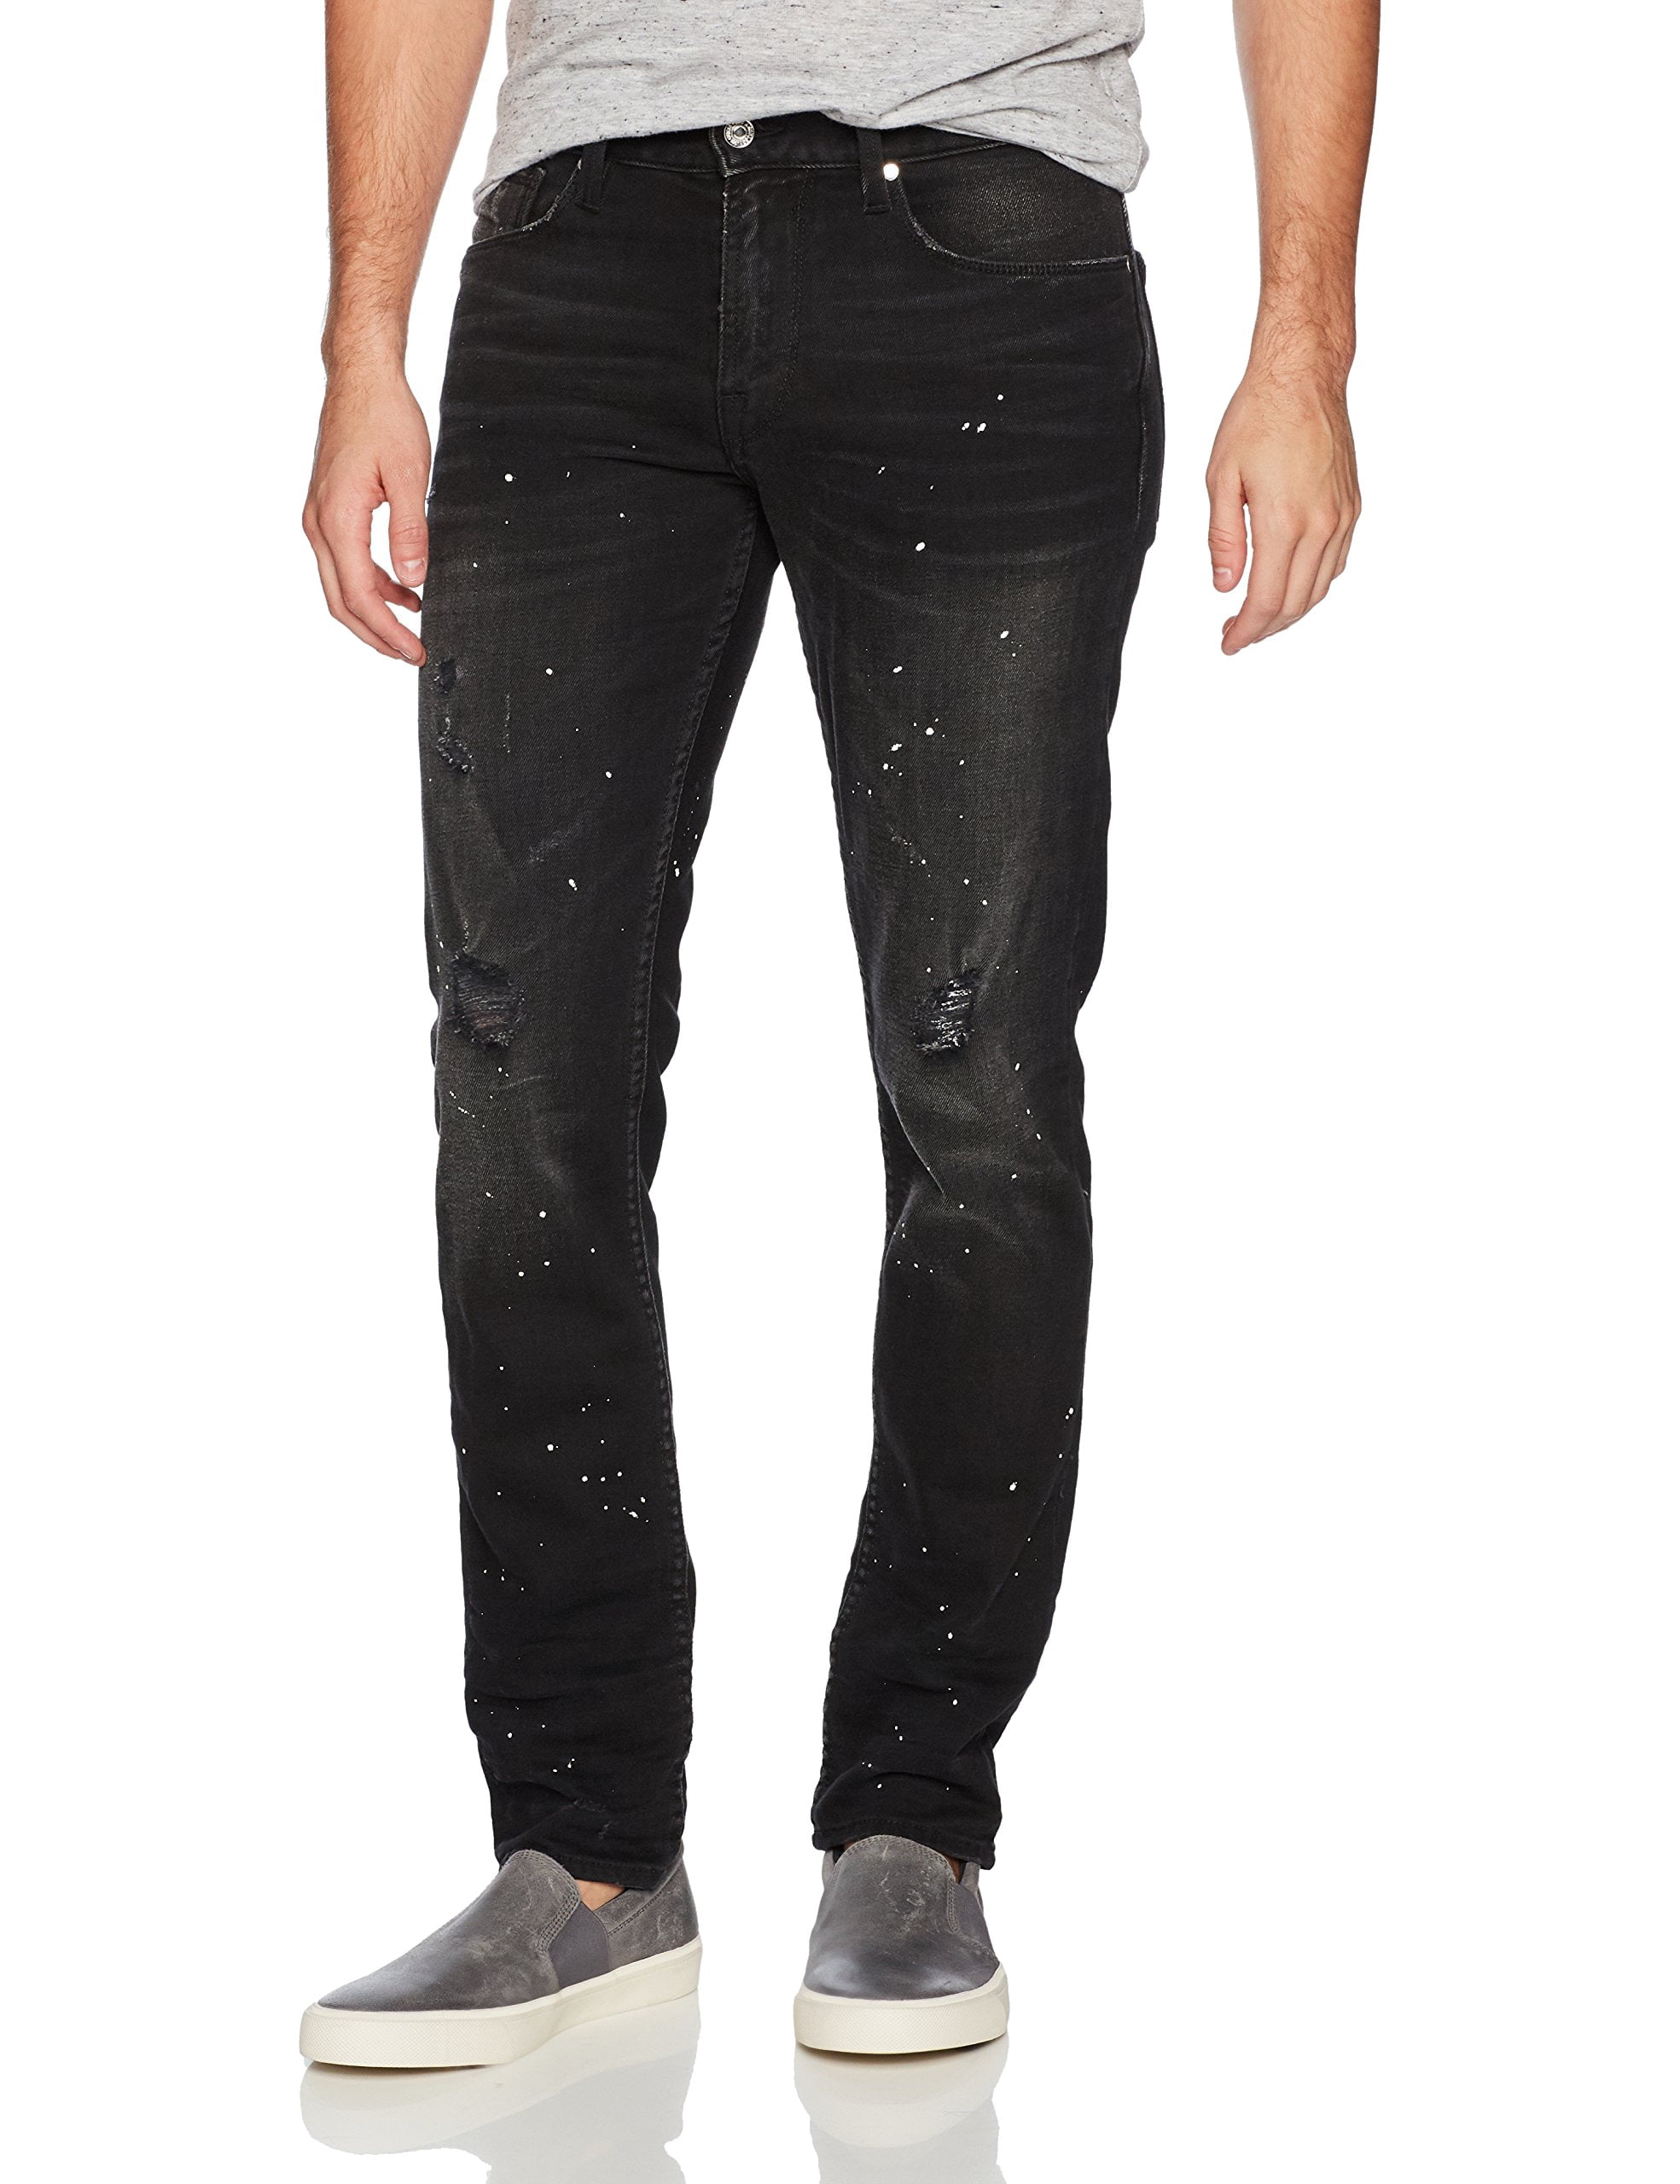 GUESS - Mens 33X32 Distressed Slim Skinny Stretch Jeans 33 - Walmart ...